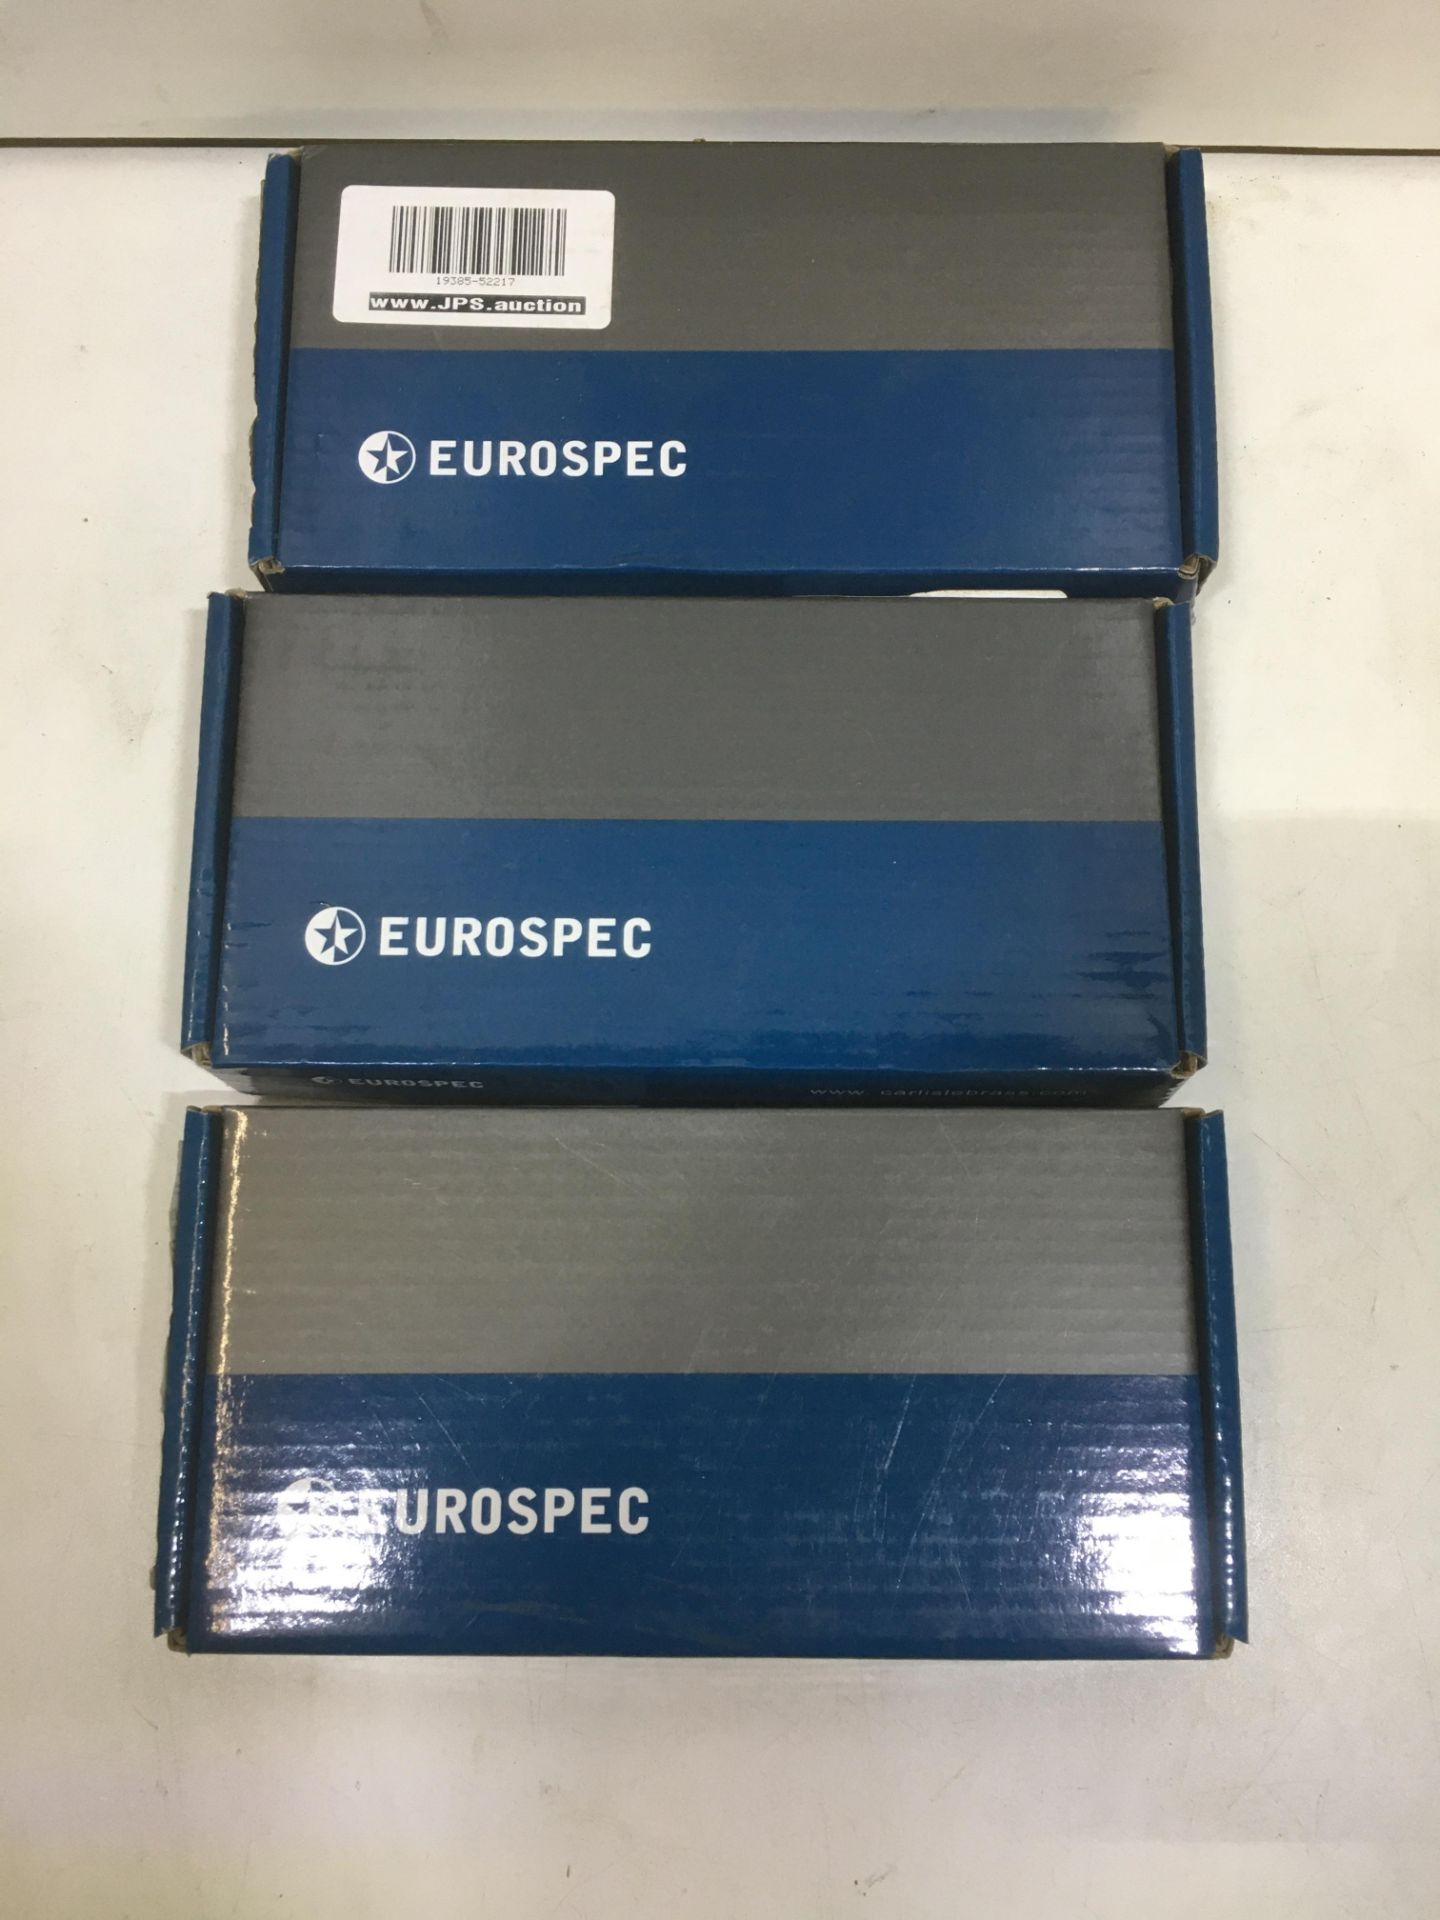 3 x Eurospec Door Locks As Per Description